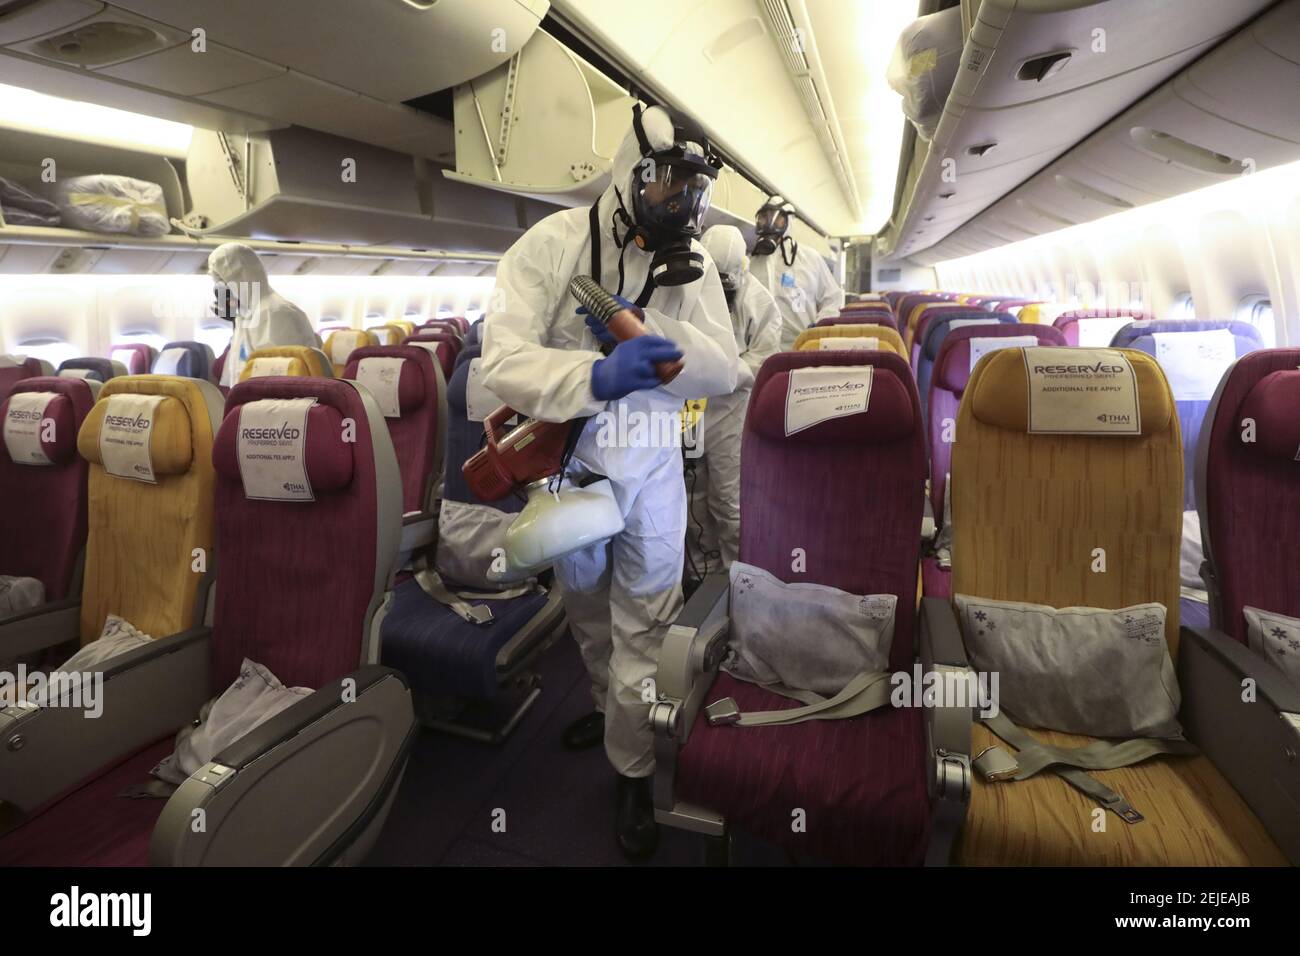 Crew-Mitglieder in Schutzanzügen und Masken sprühen während des  Desinfektionsprozesses. Thai Airways International sprüht  Desinfektionsmittel auf Passagiersitzen im Flugzeug nach einer riskanten  Corona-Virus-Infektion. Thailand hat 14 Fälle entdeckt ...